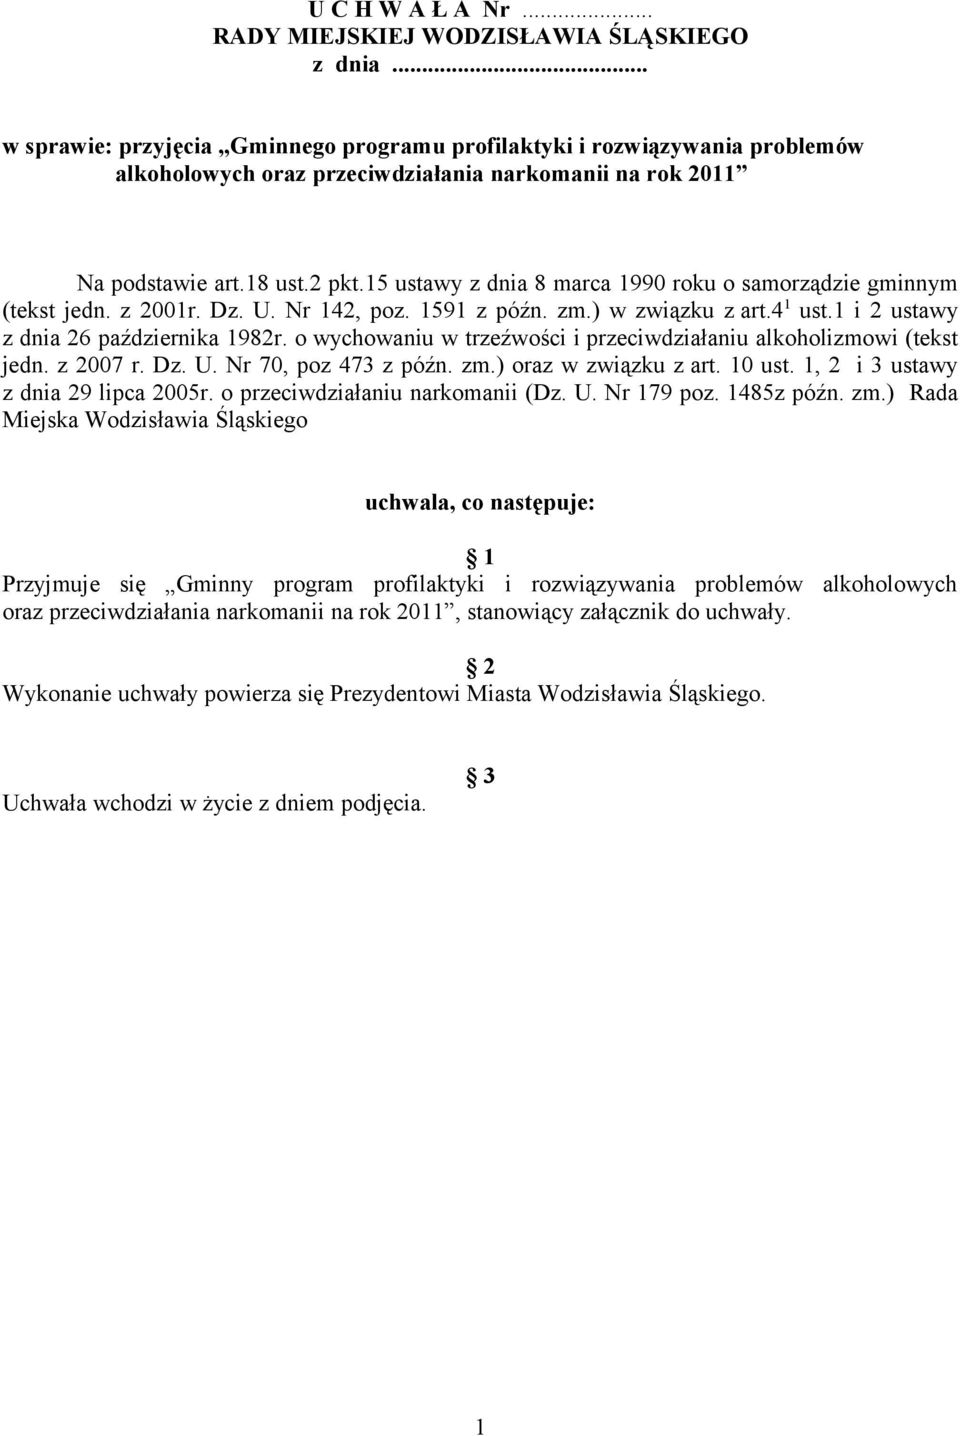 15 ustawy z dnia 8 marca 1990 roku o samorządzie gminnym (tekst jedn. z 2001r. Dz. U. Nr 142, poz. 1591 z późn. zm.) w związku z art.4 1 ust.1 i 2 ustawy z dnia 26 października 1982r.